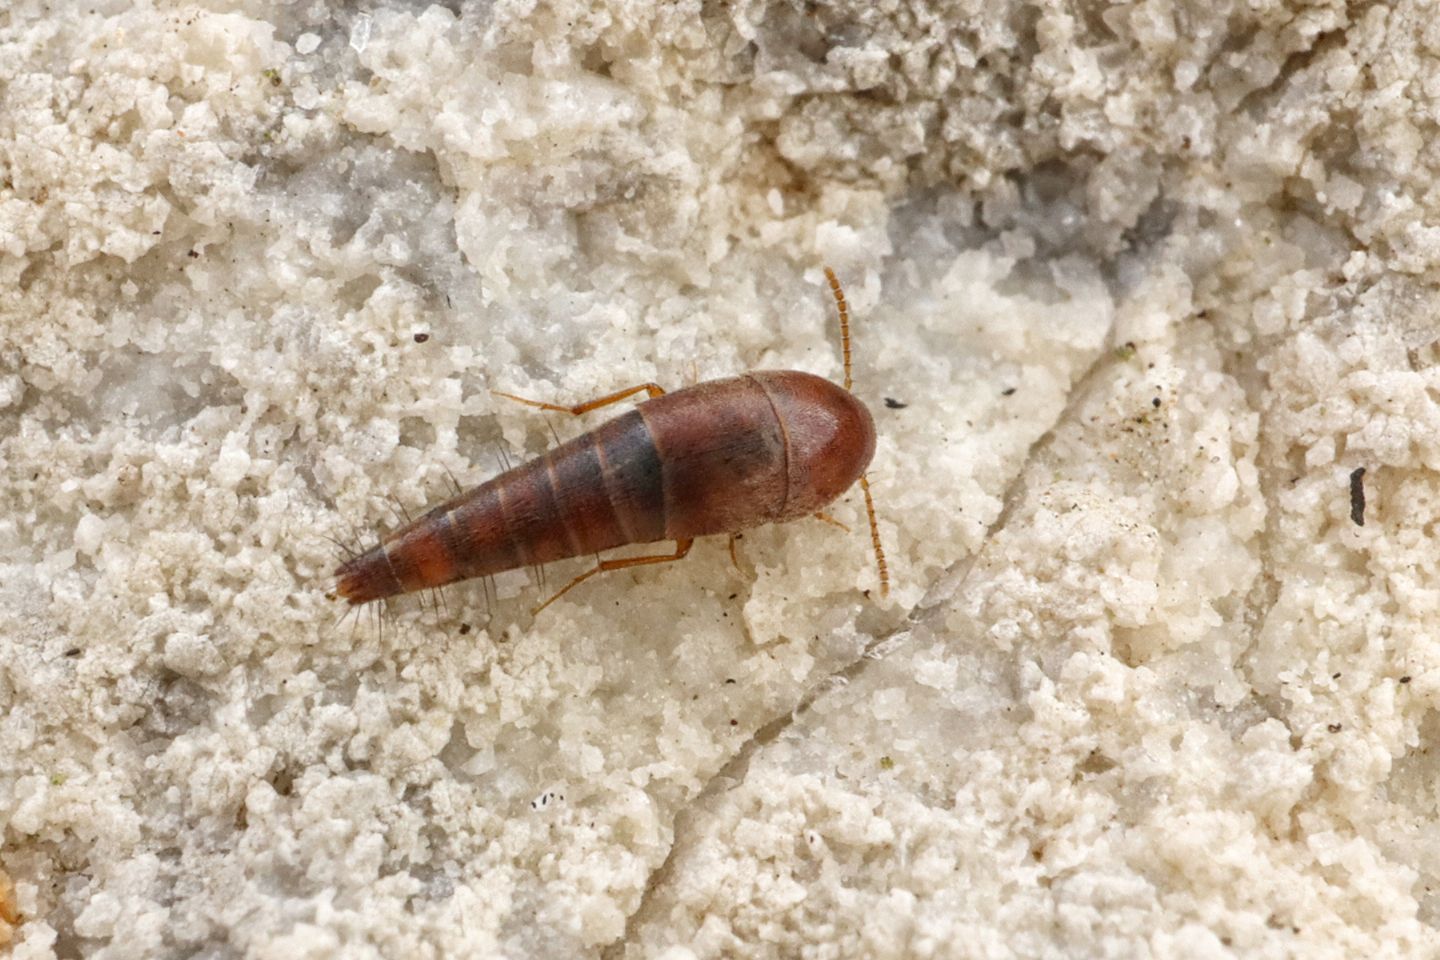 Staphylinidae: Sepedophilus sp.